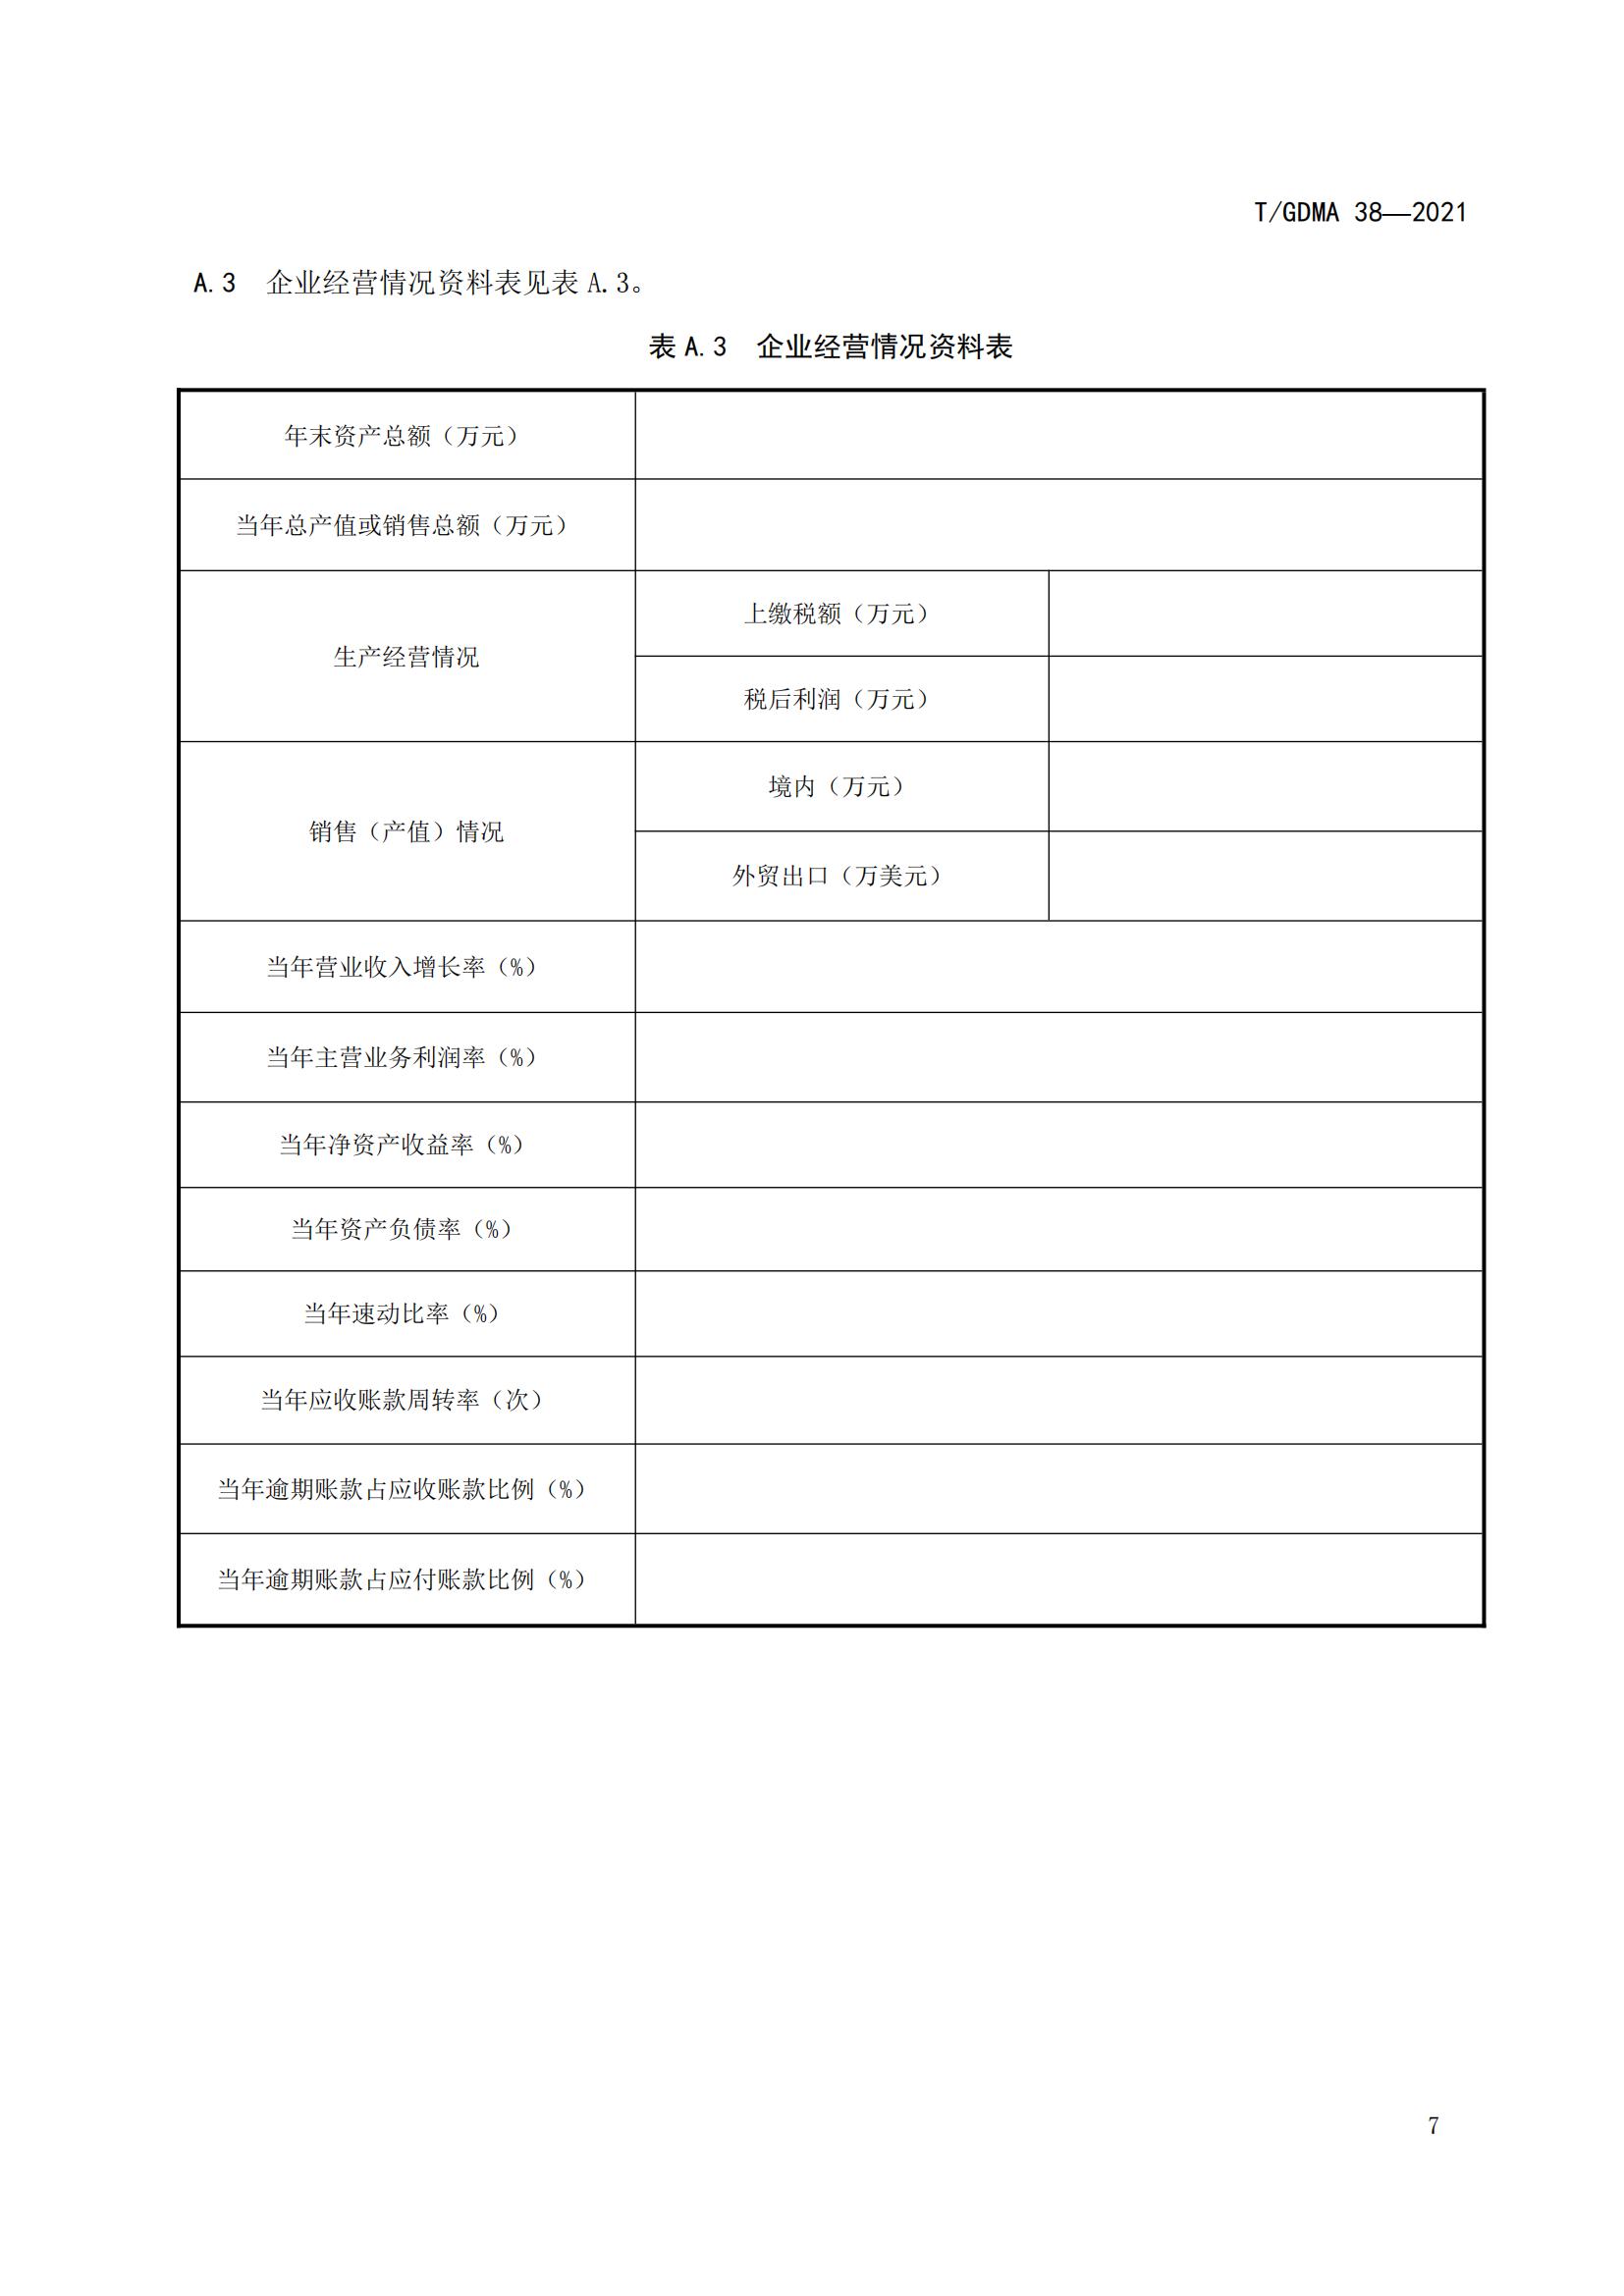 TGDMA 38 广东省守合同重信用企业等级评定规范-发布稿_10.jpg